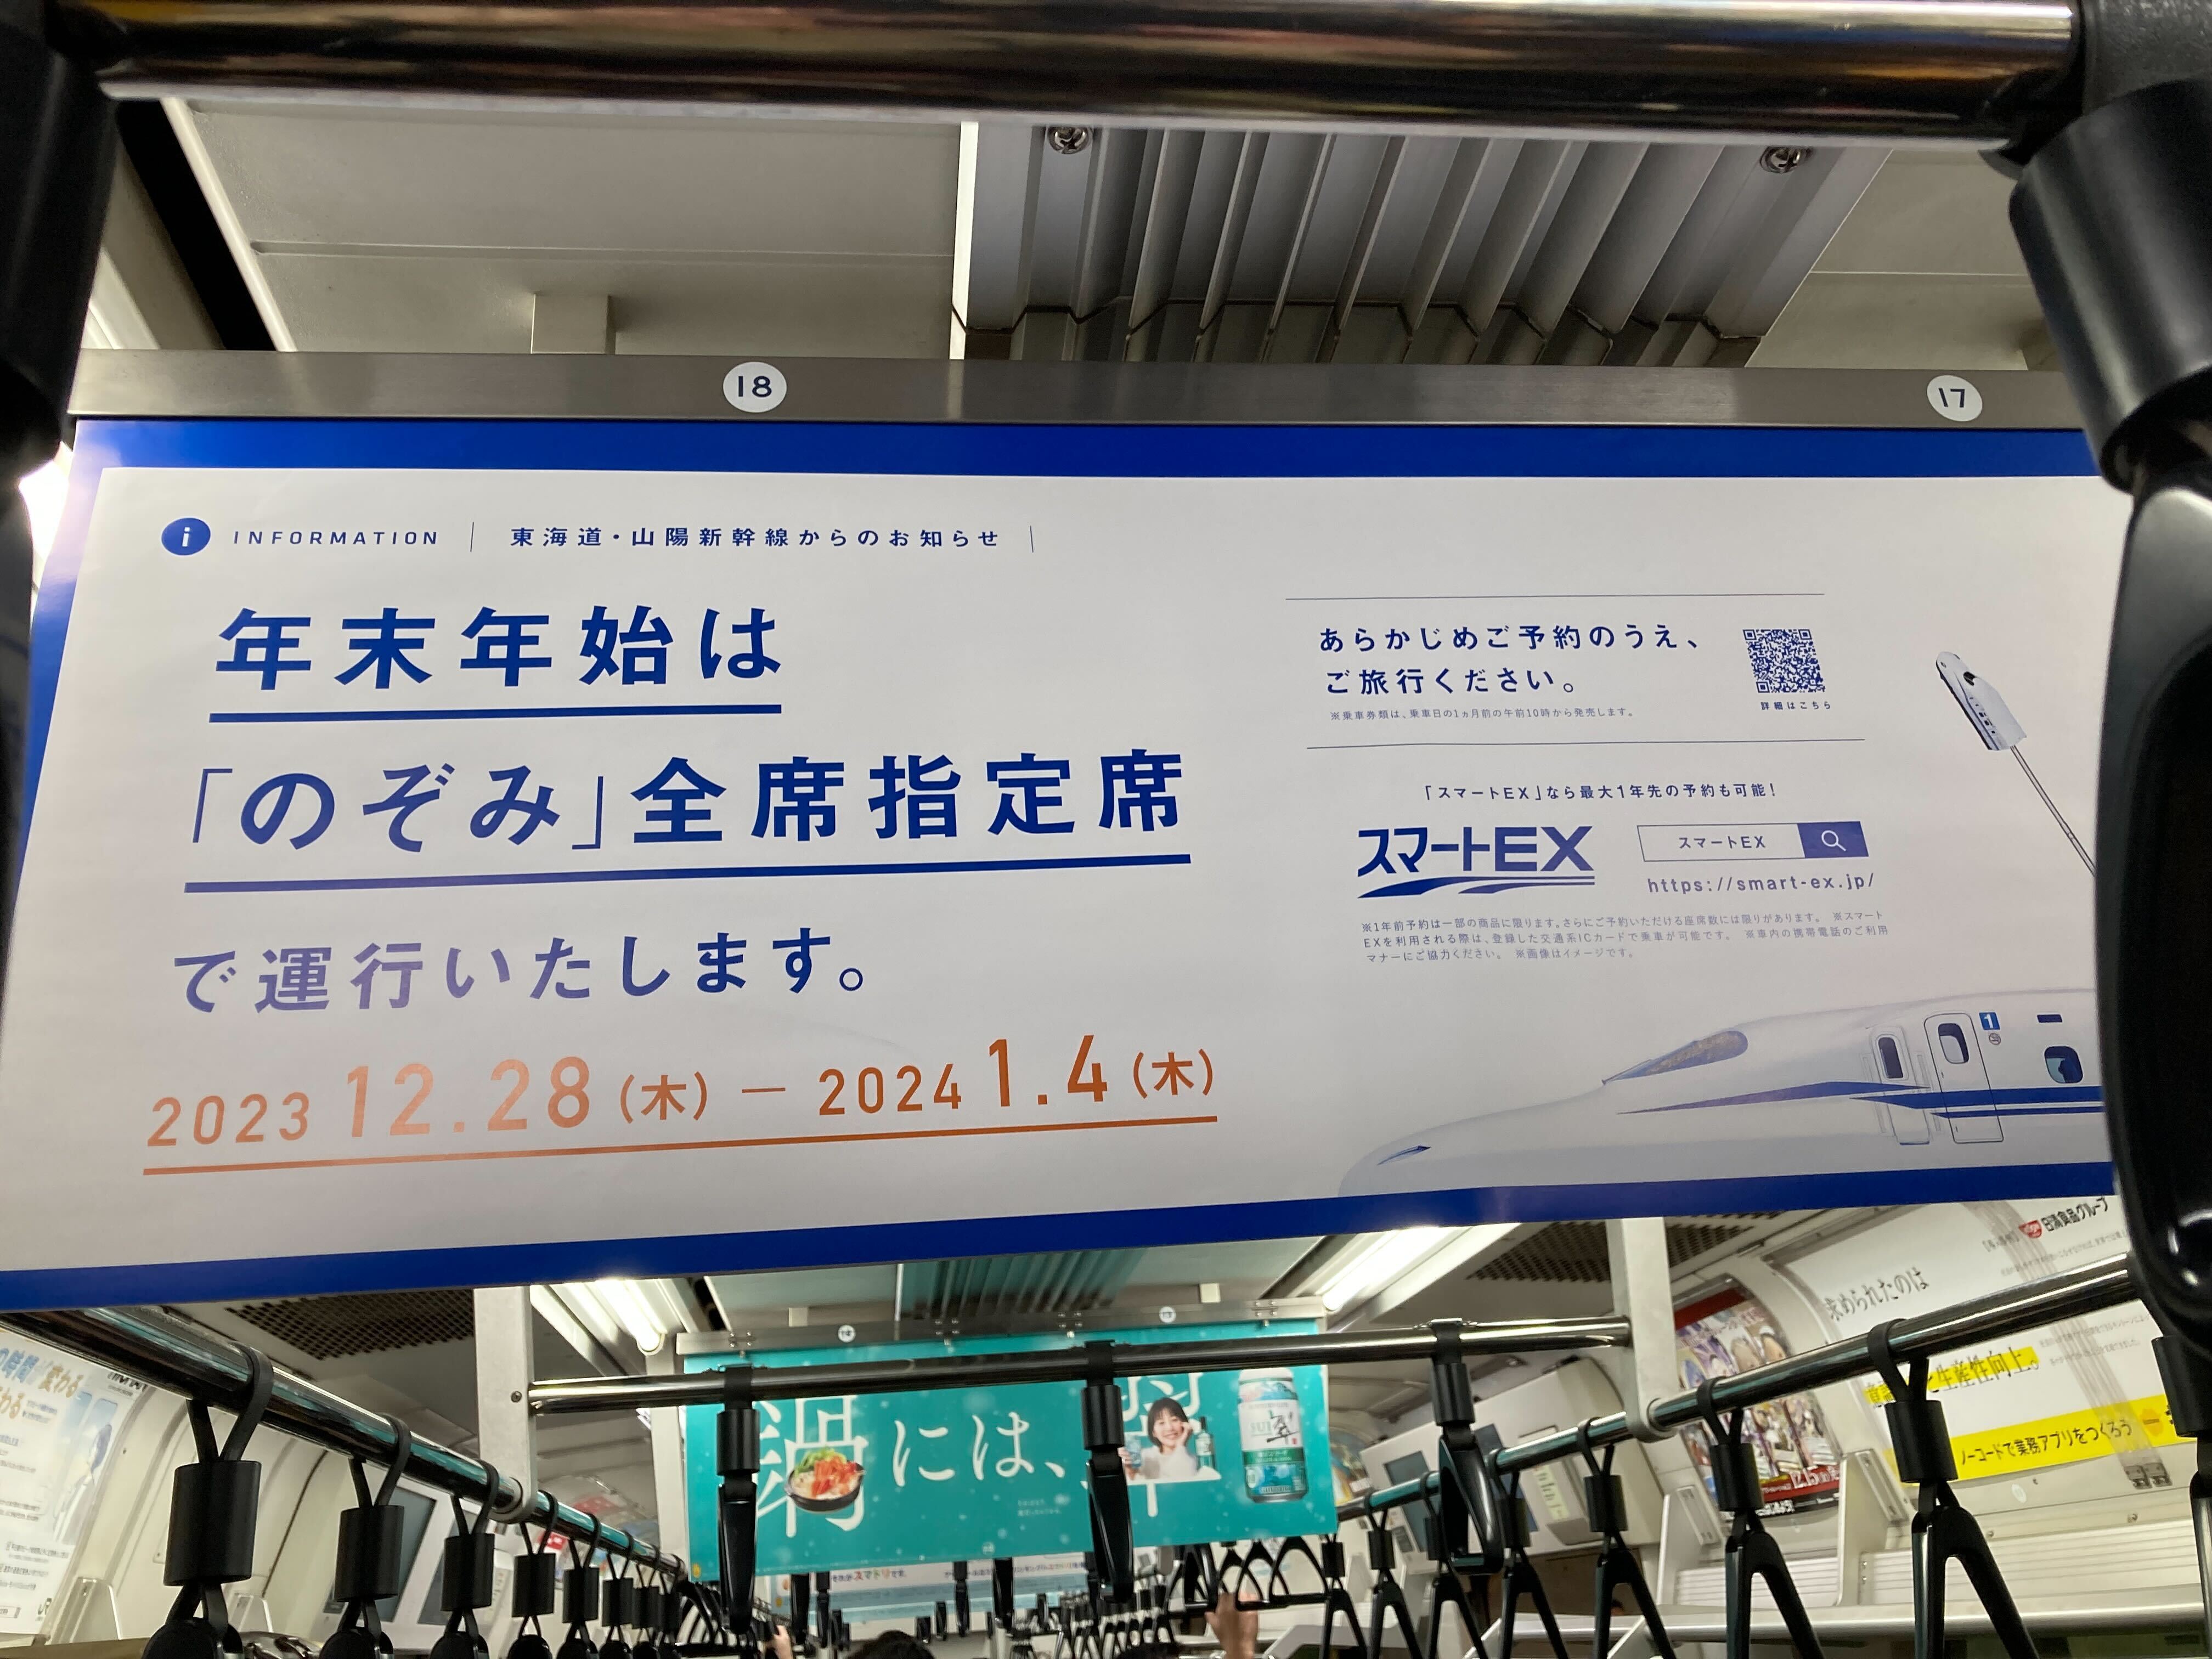 年末年始の新幹線「のぞみ」は自由席がなくなるから気をつけて。もし ...